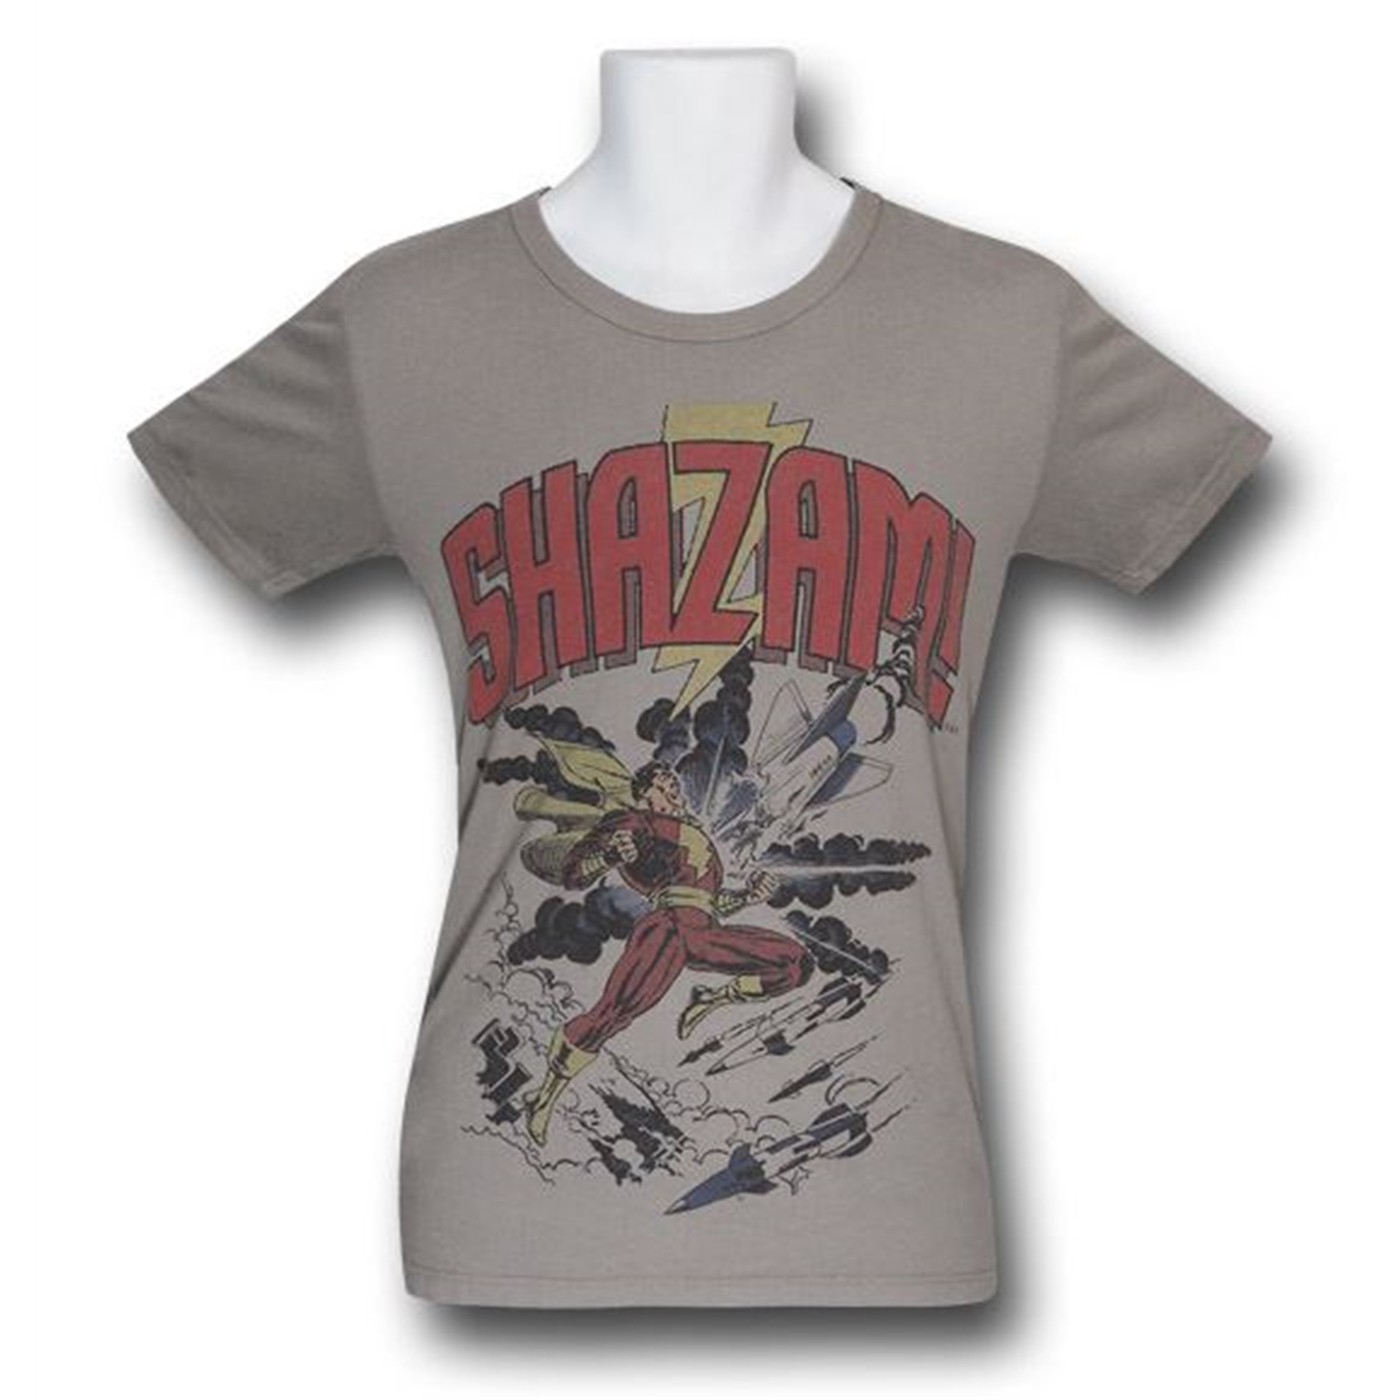 Shazam Air Strike Trunk T-Shirt